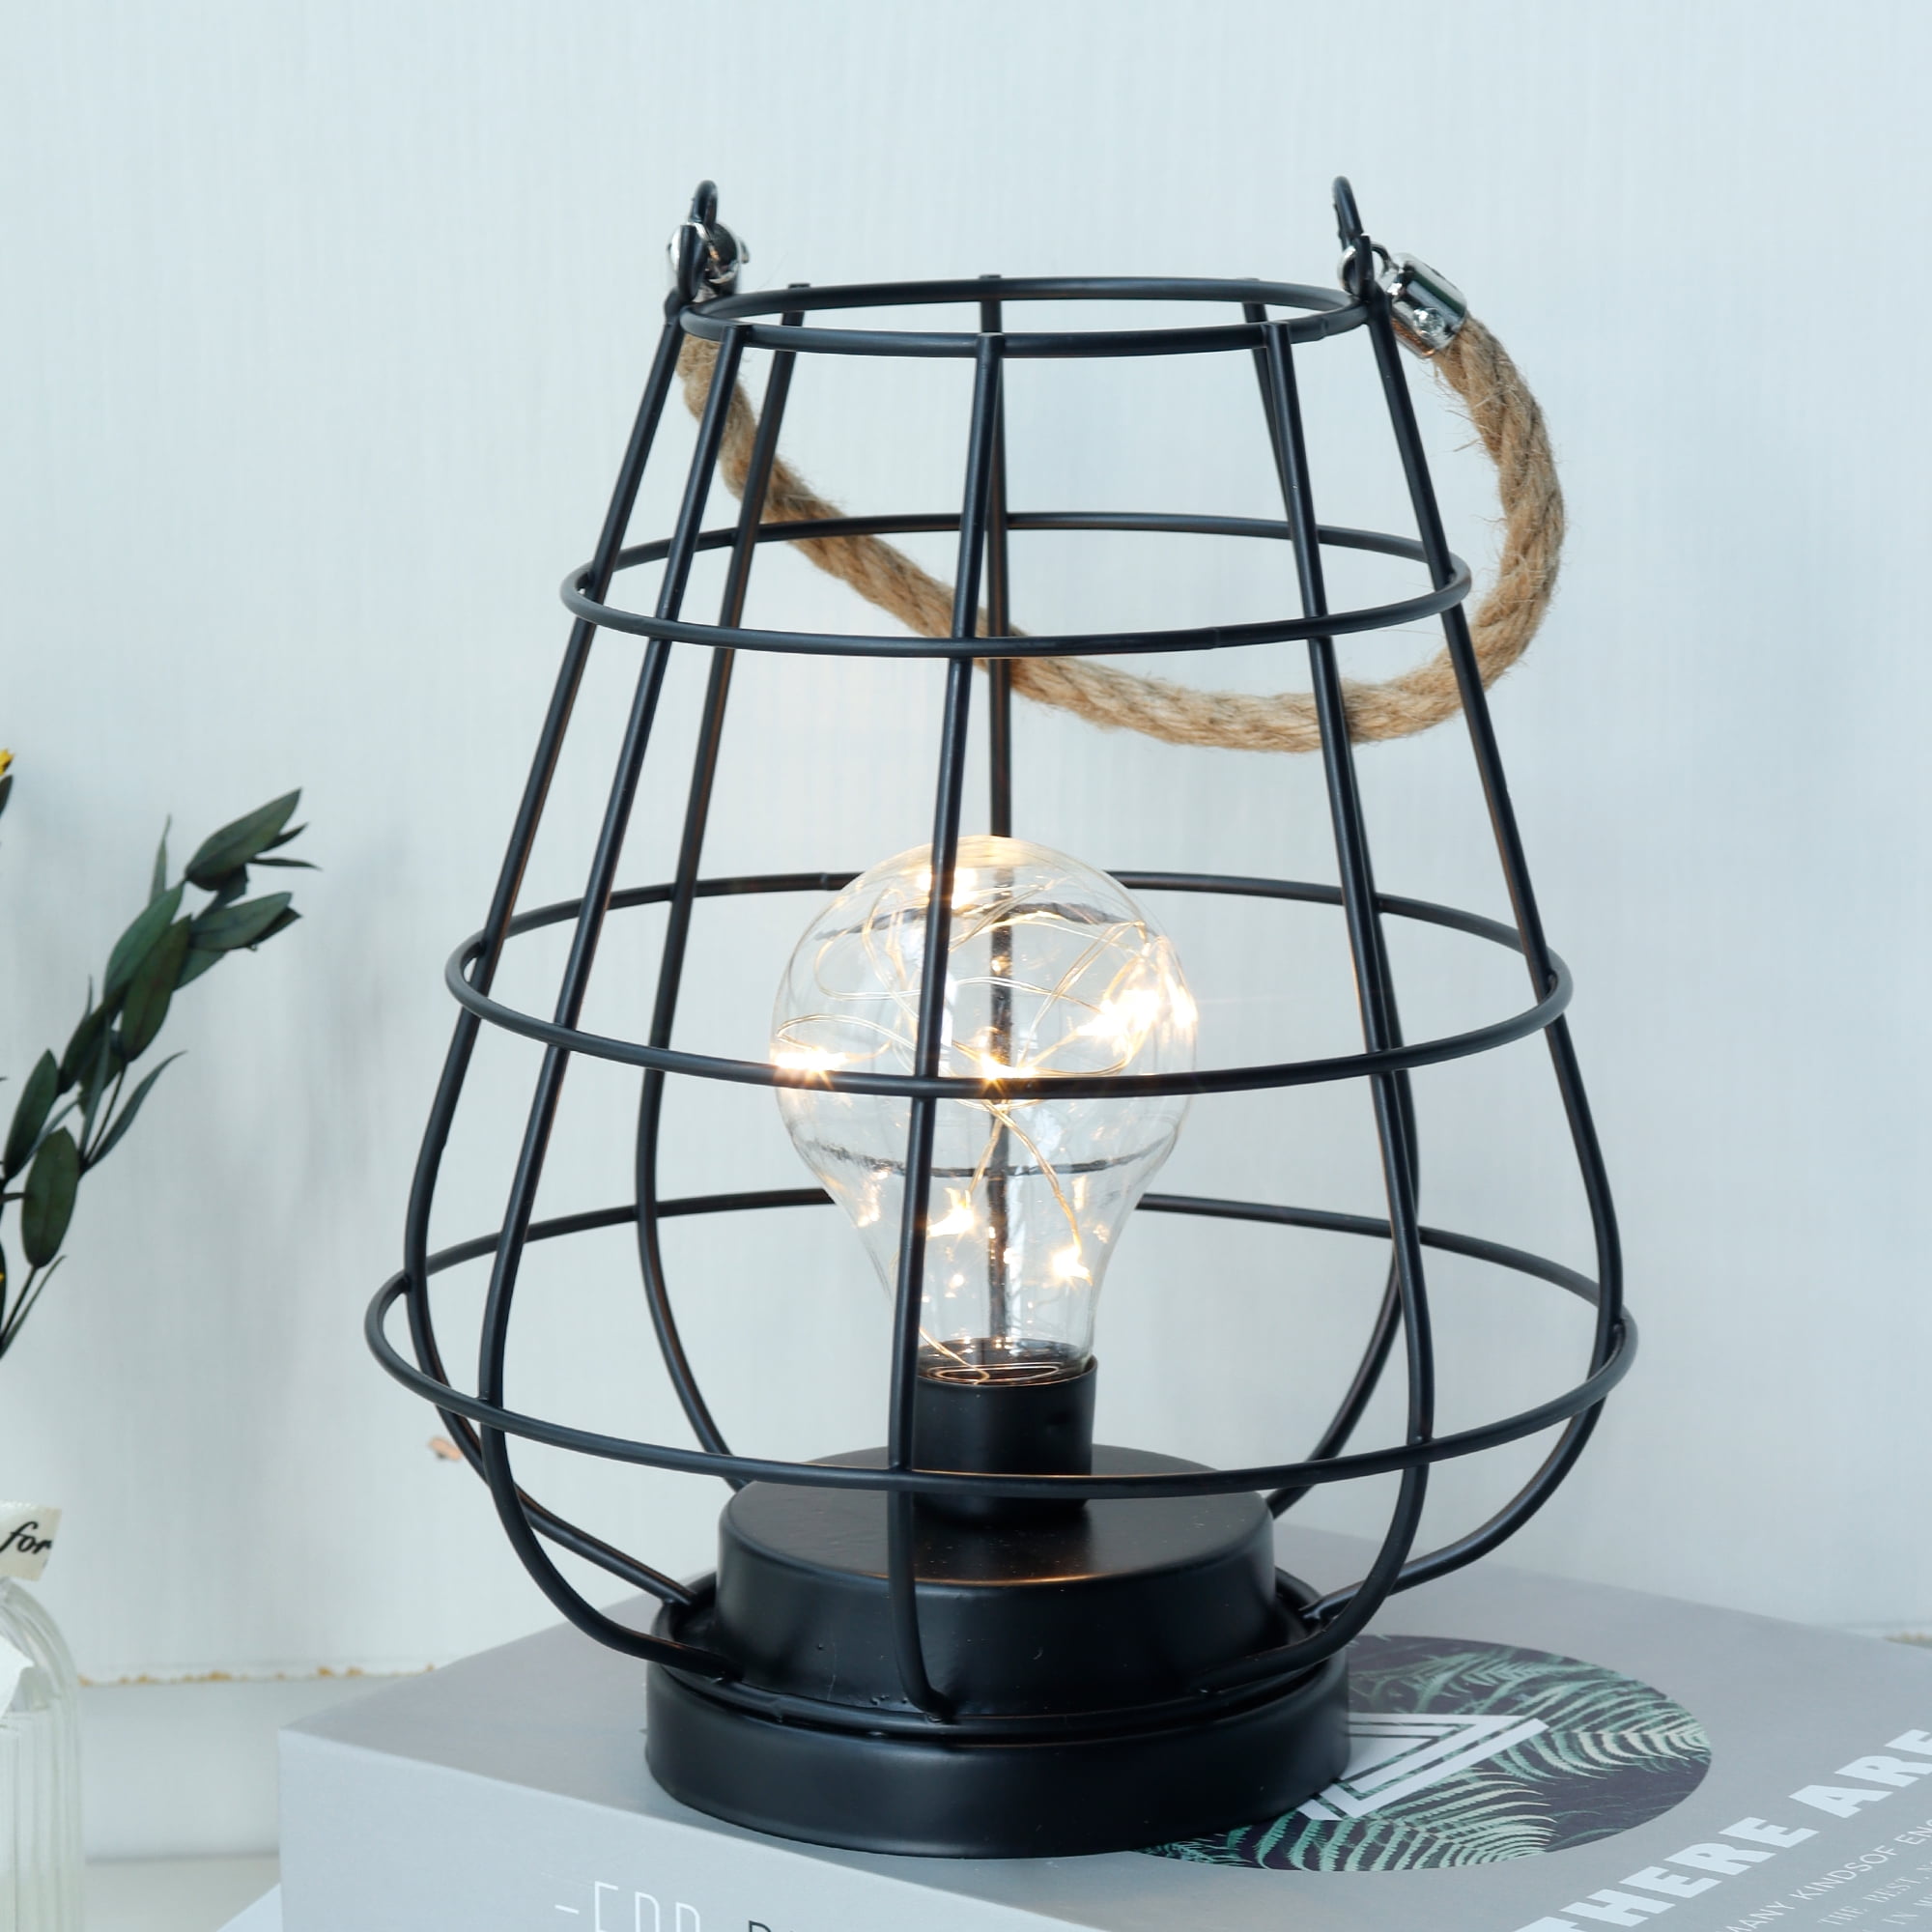 DIY Lamp Cordless and Battery-free - Designs By Karan